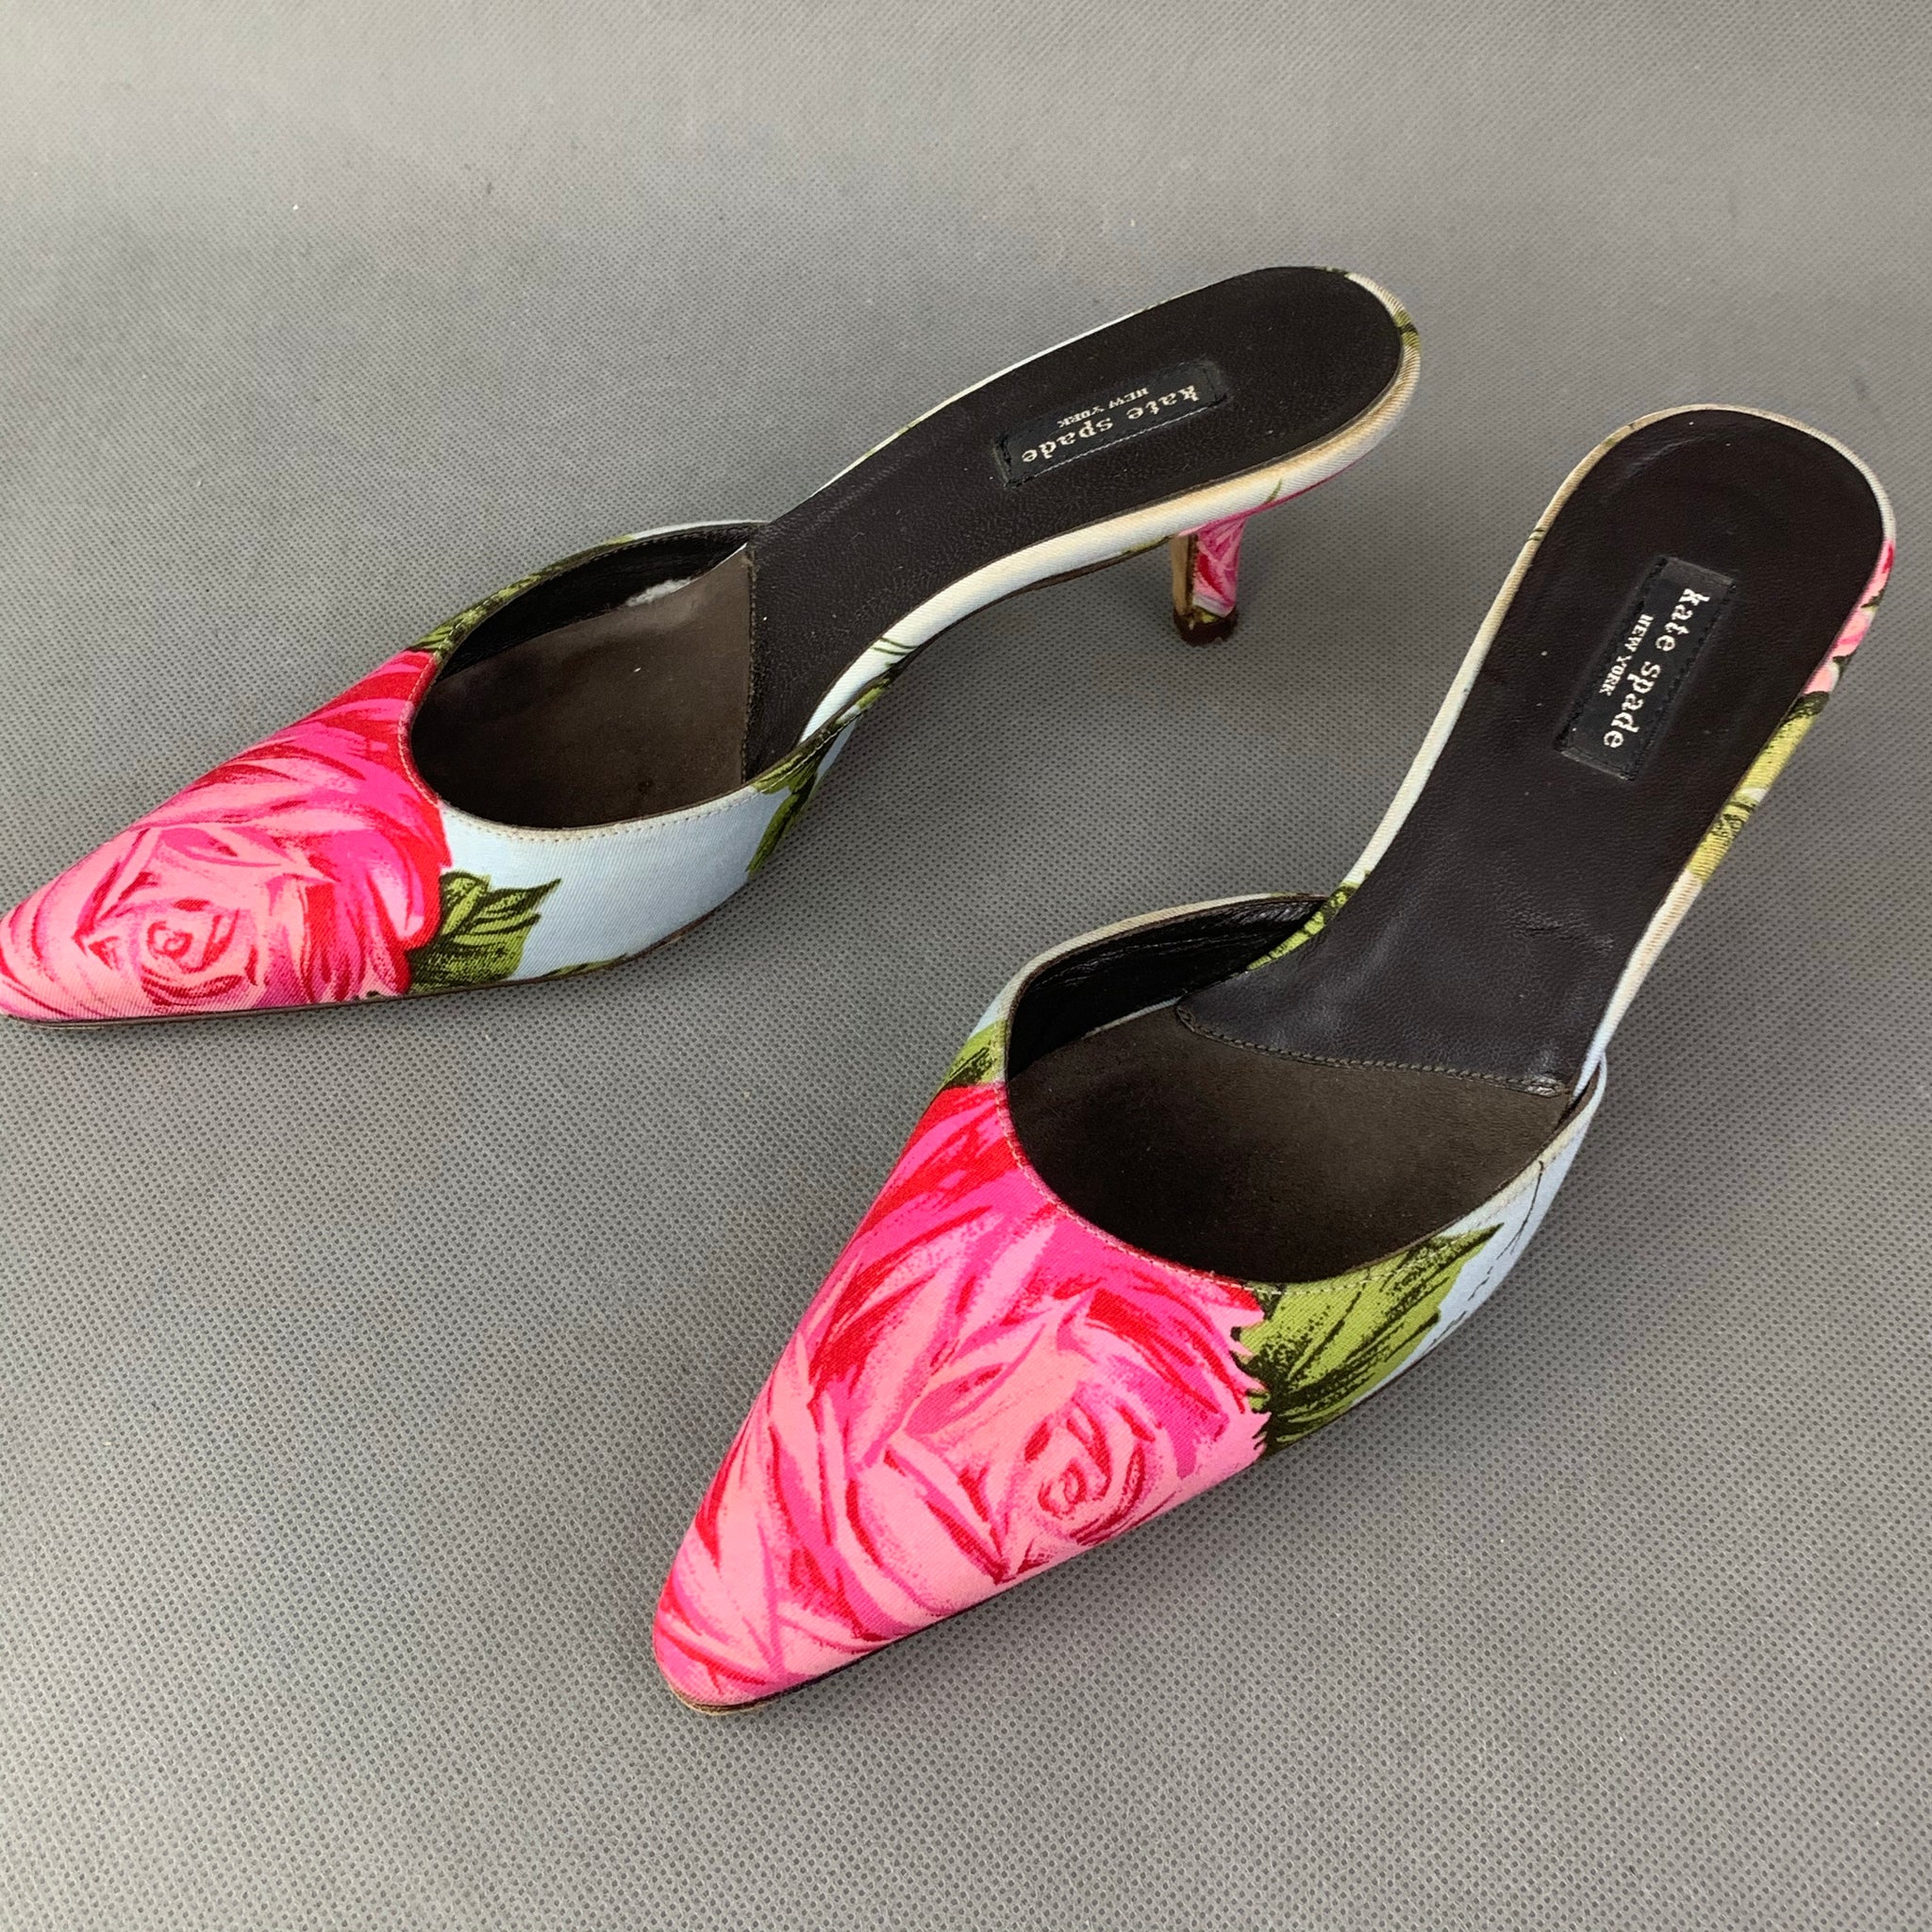 KATE SPADE Floral Kitten Heel Mules / Shoes Size UK 3 - EU 37 - US  –  